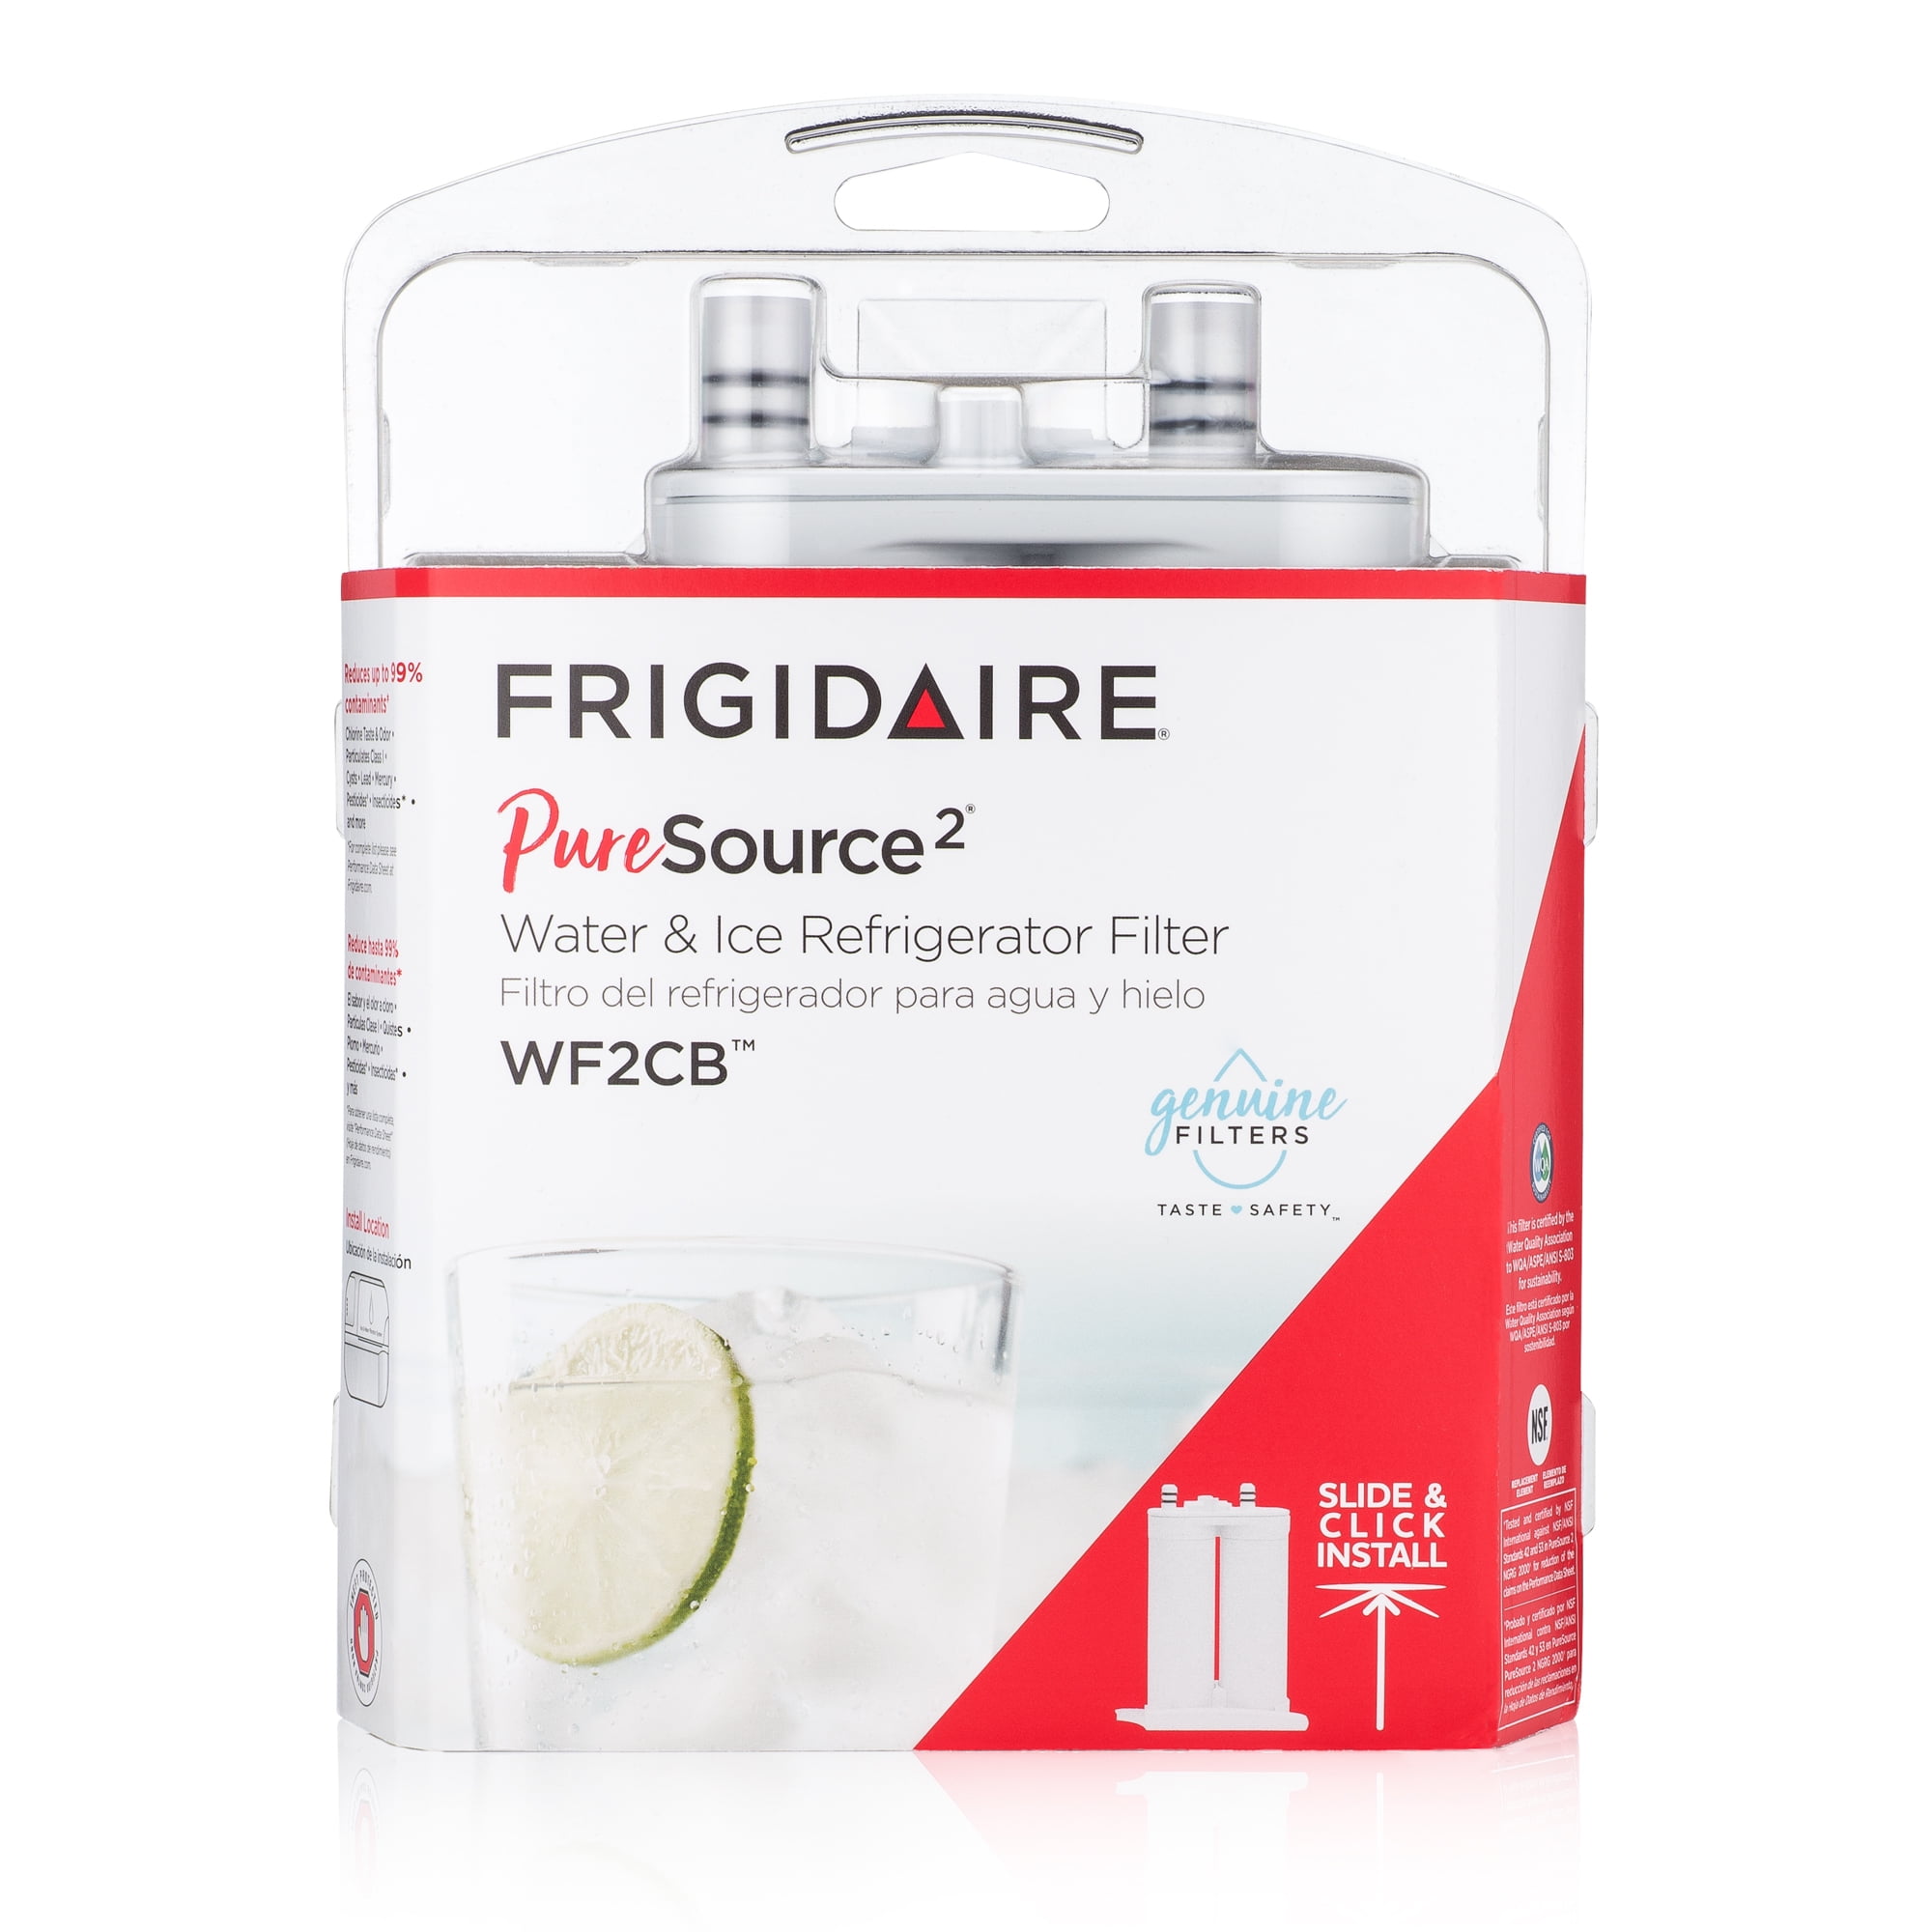 Frigidaire PureSource 2 Comp Refrigerator Filter WF2CB